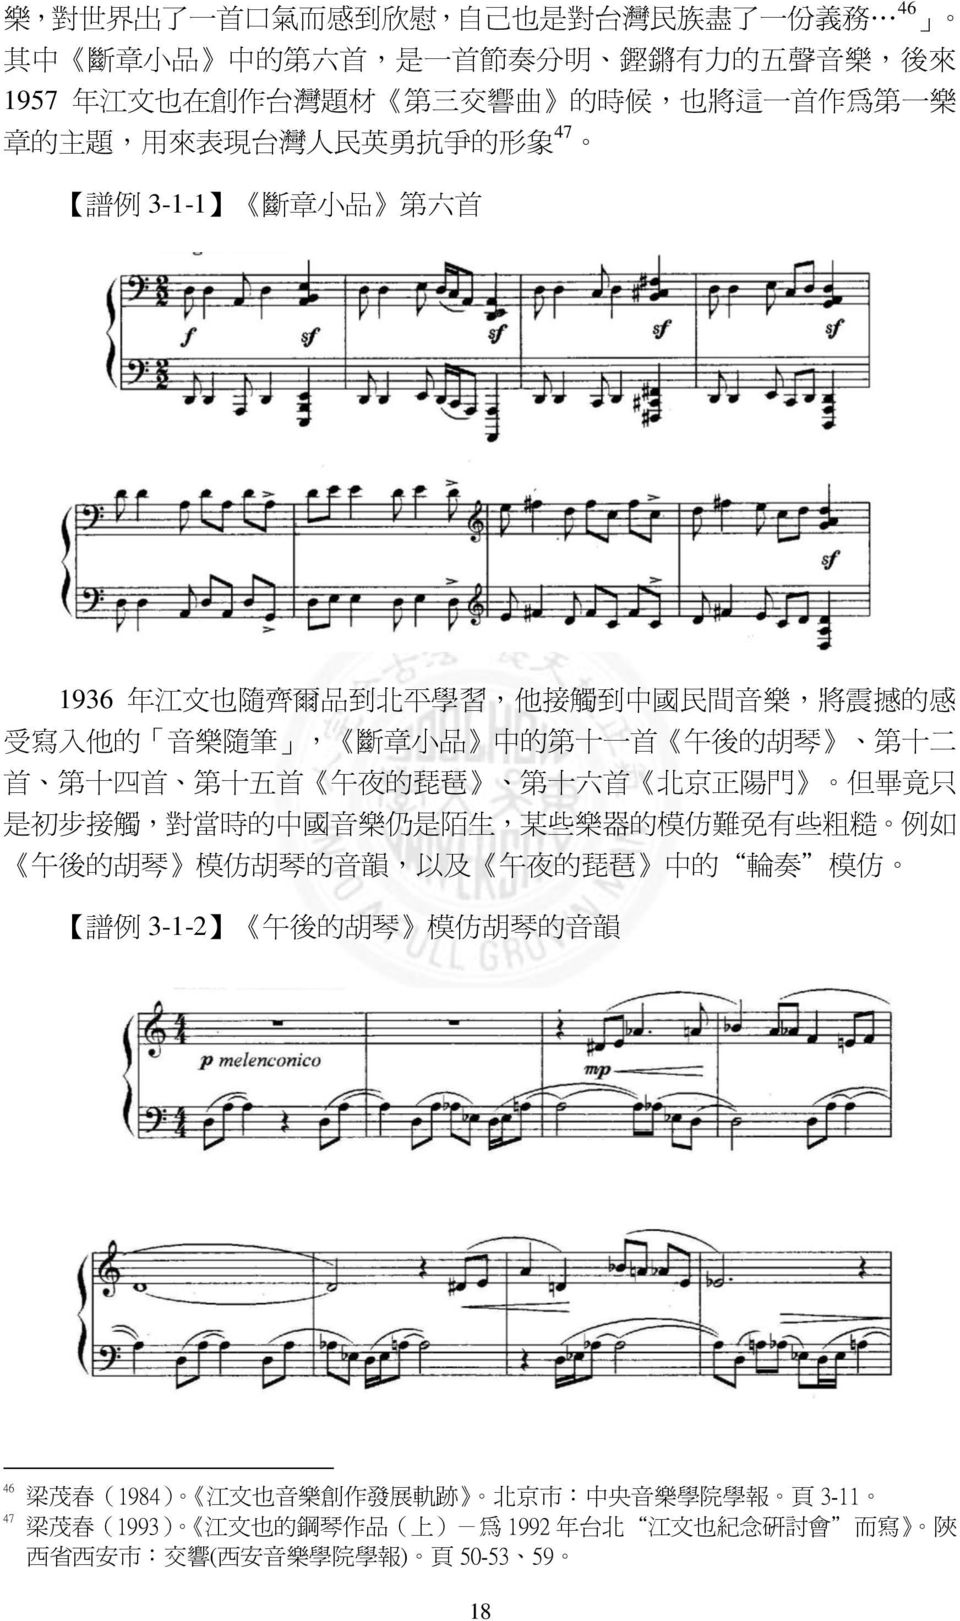 十 五 首 午 夜 的 琵 琶 第 十 六 首 北 京 正 陽 門 但 畢 竟 只 是 初 步 接 觸, 對 當 時 的 中 國 音 樂 仍 是 陌 生, 某 些 樂 器 的 模 仿 難 免 有 些 粗 糙 例 如 午 後 的 胡 琴 模 仿 胡 琴 的 音 韻, 以 及 午 夜 的 琵 琶 中 的 輪 奏 模 仿 譜 例 3-1-2 午 後 的 胡 琴 模 仿 胡 琴 的 音 韻